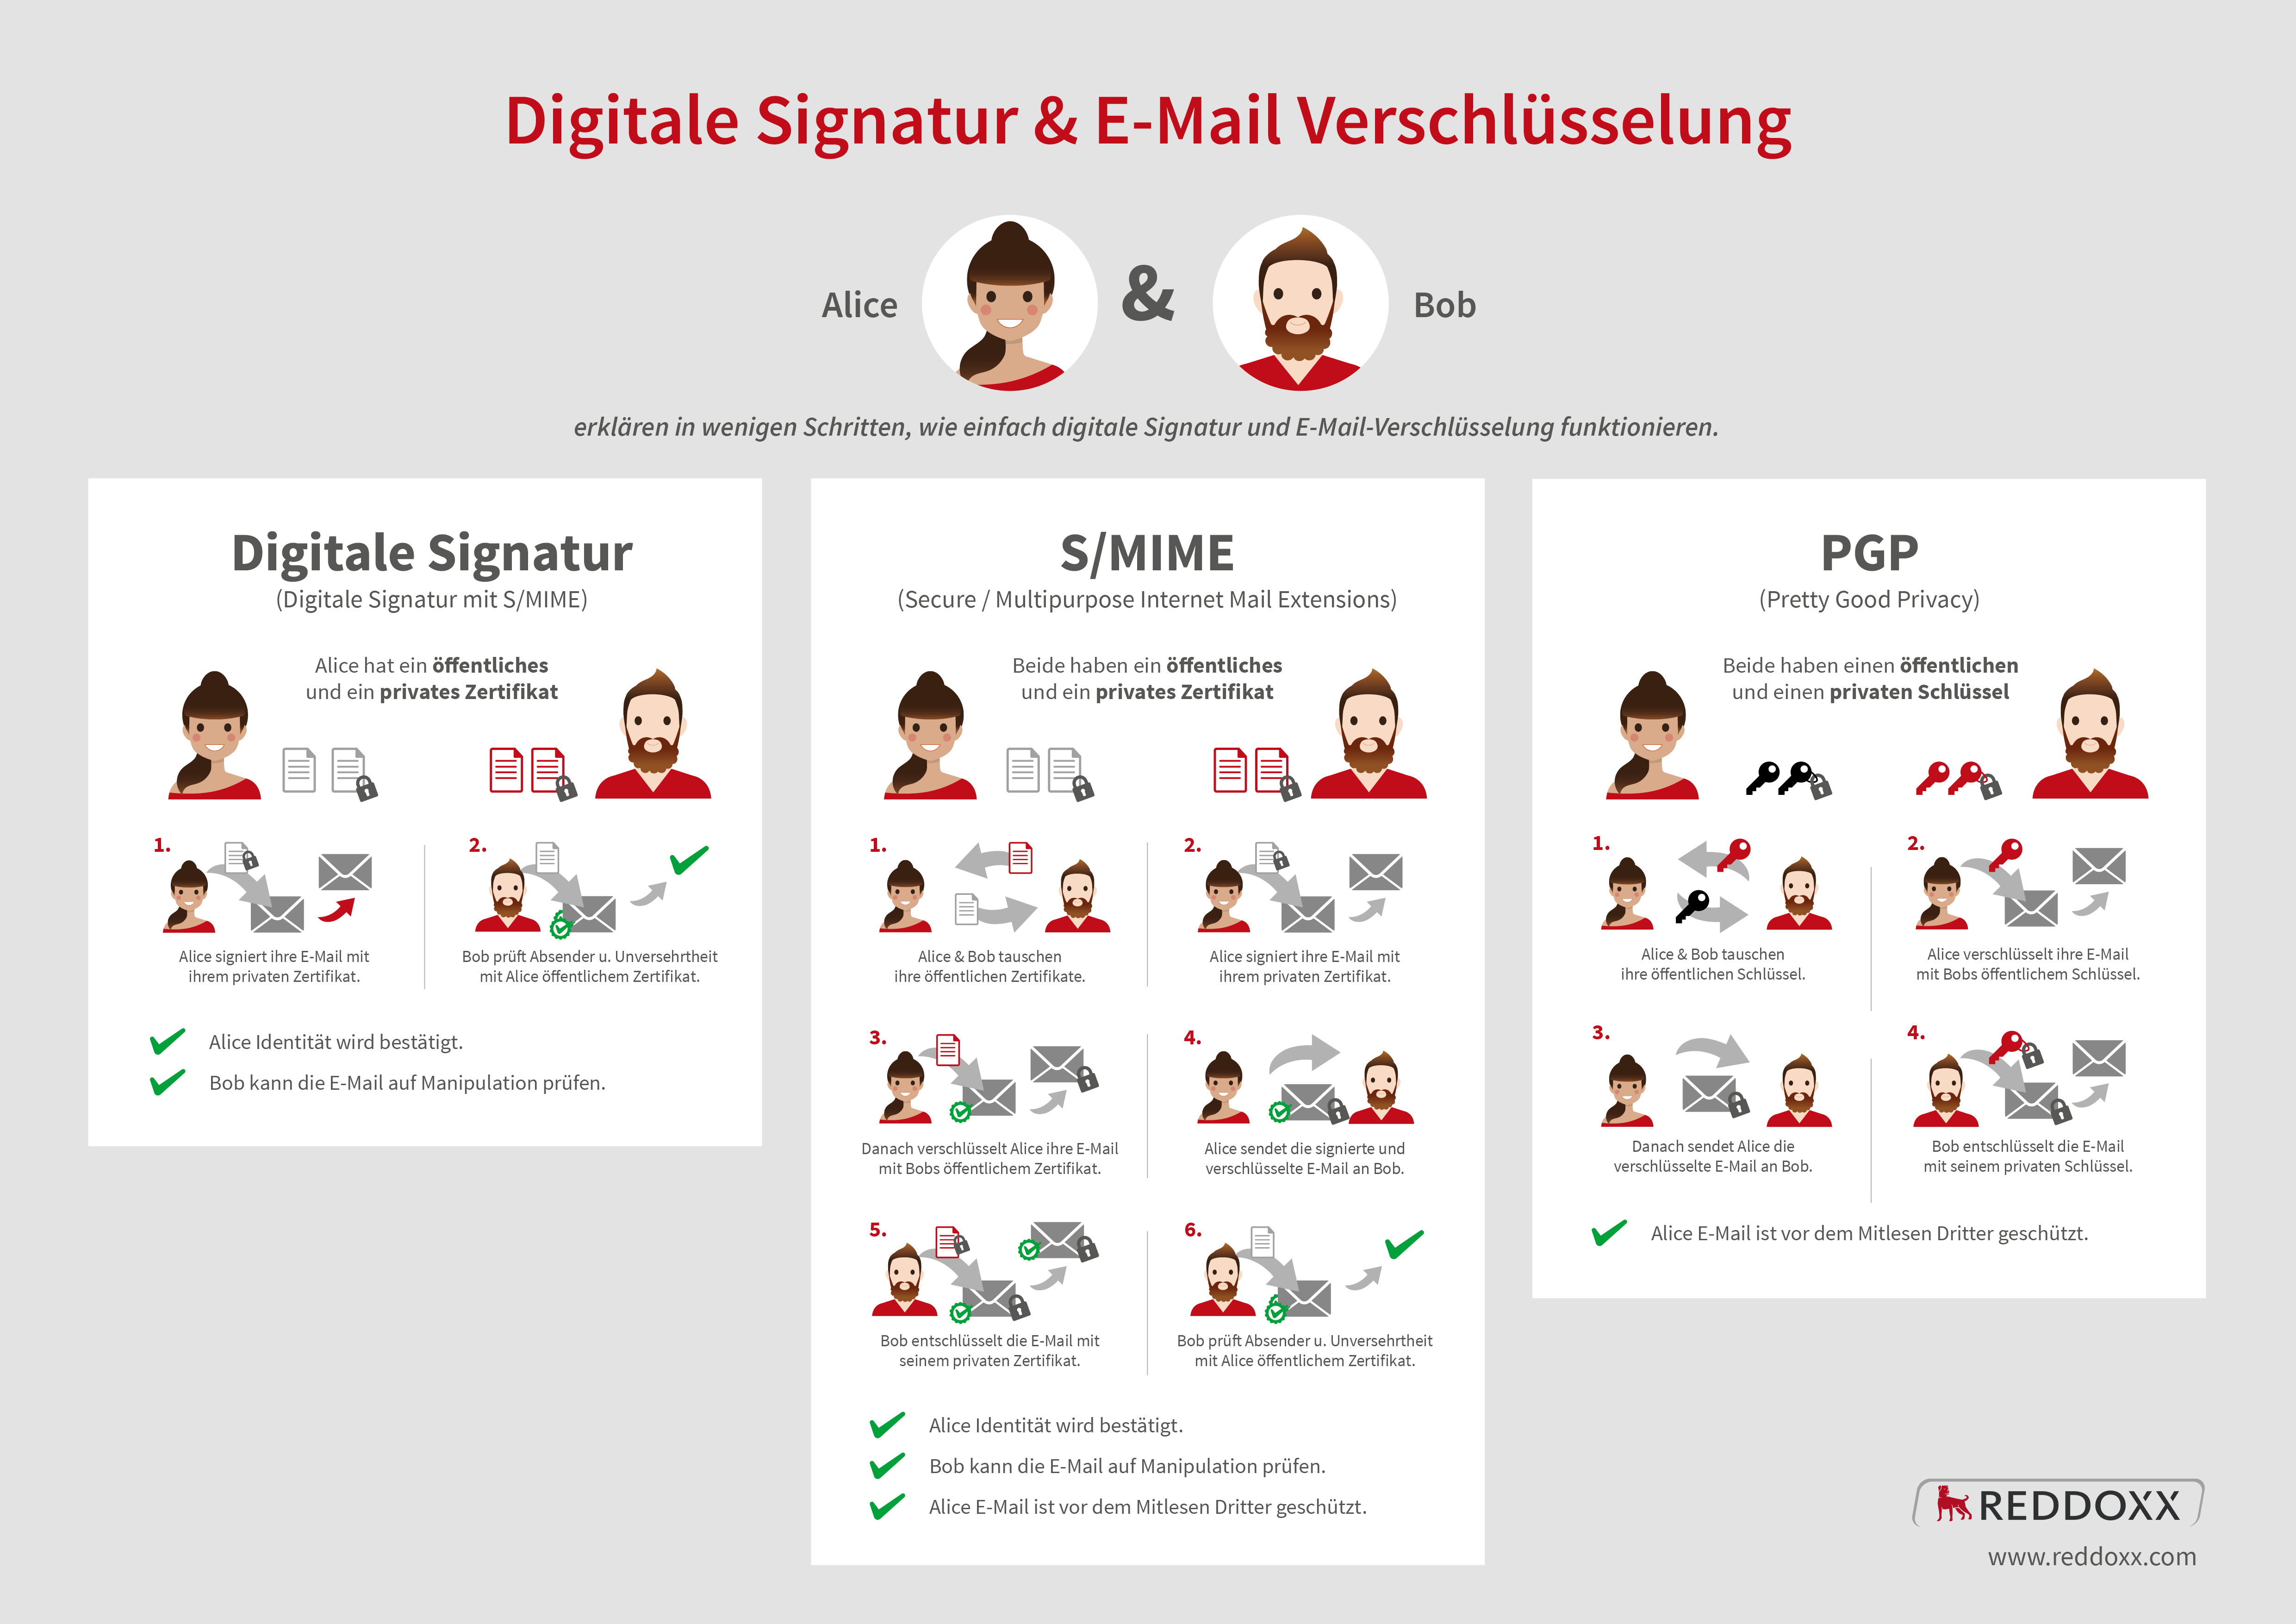 Wie funktioniert Digitale Signatur & E-Mail-Verschlüsselung